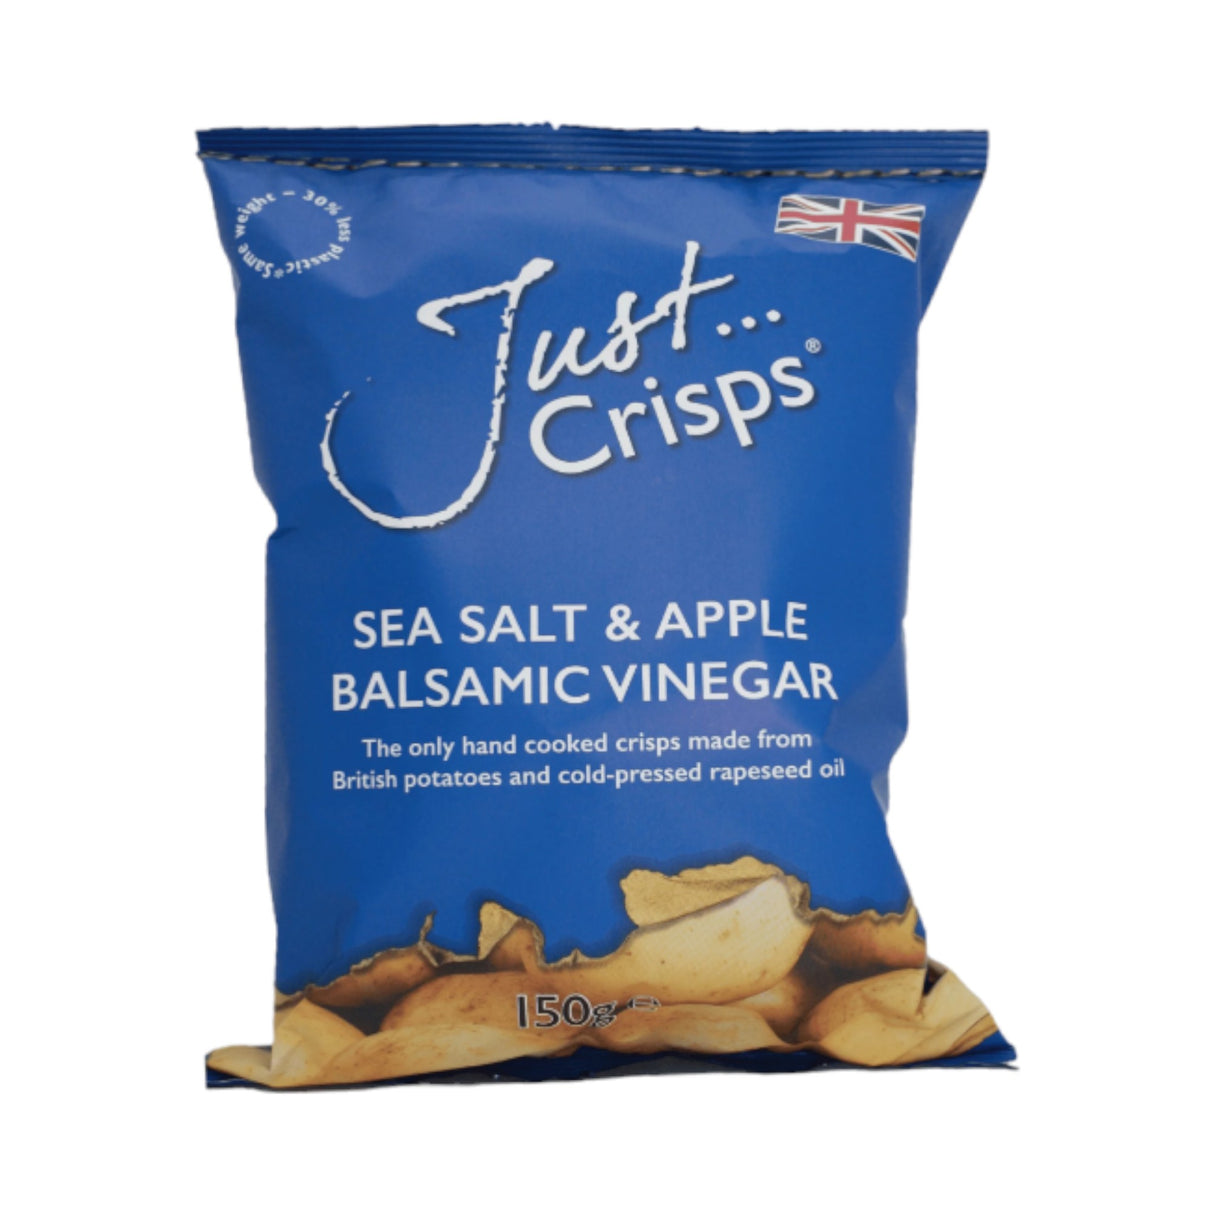 Just Crisps - Sea Salt & Apple Balsamic Vinegar Crisps 150g